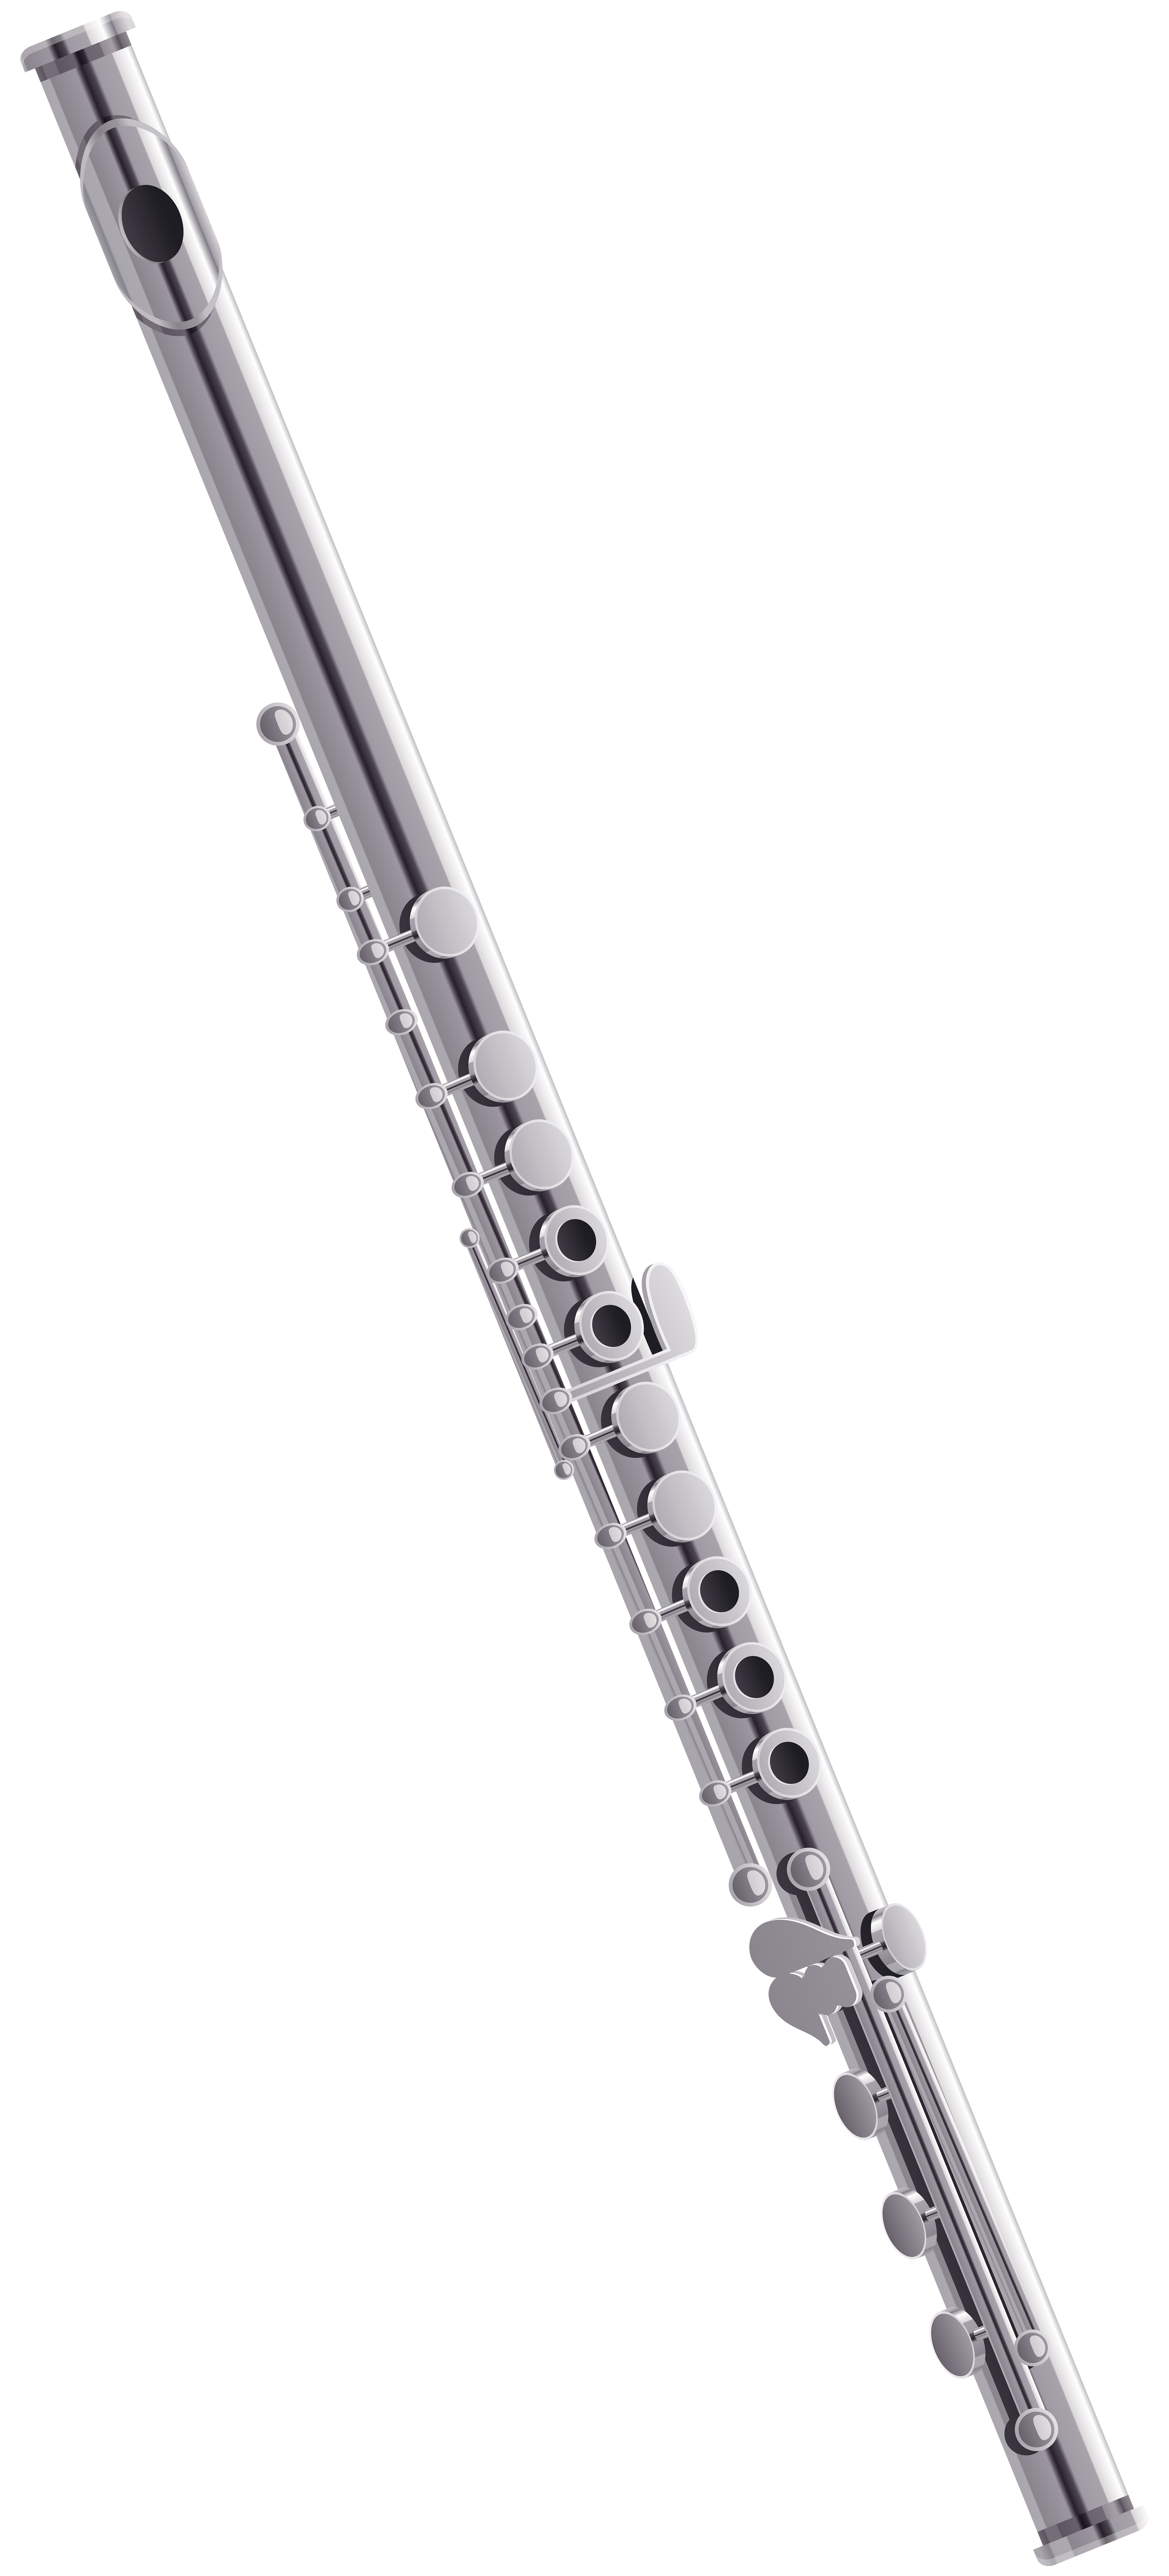 flutes clipart